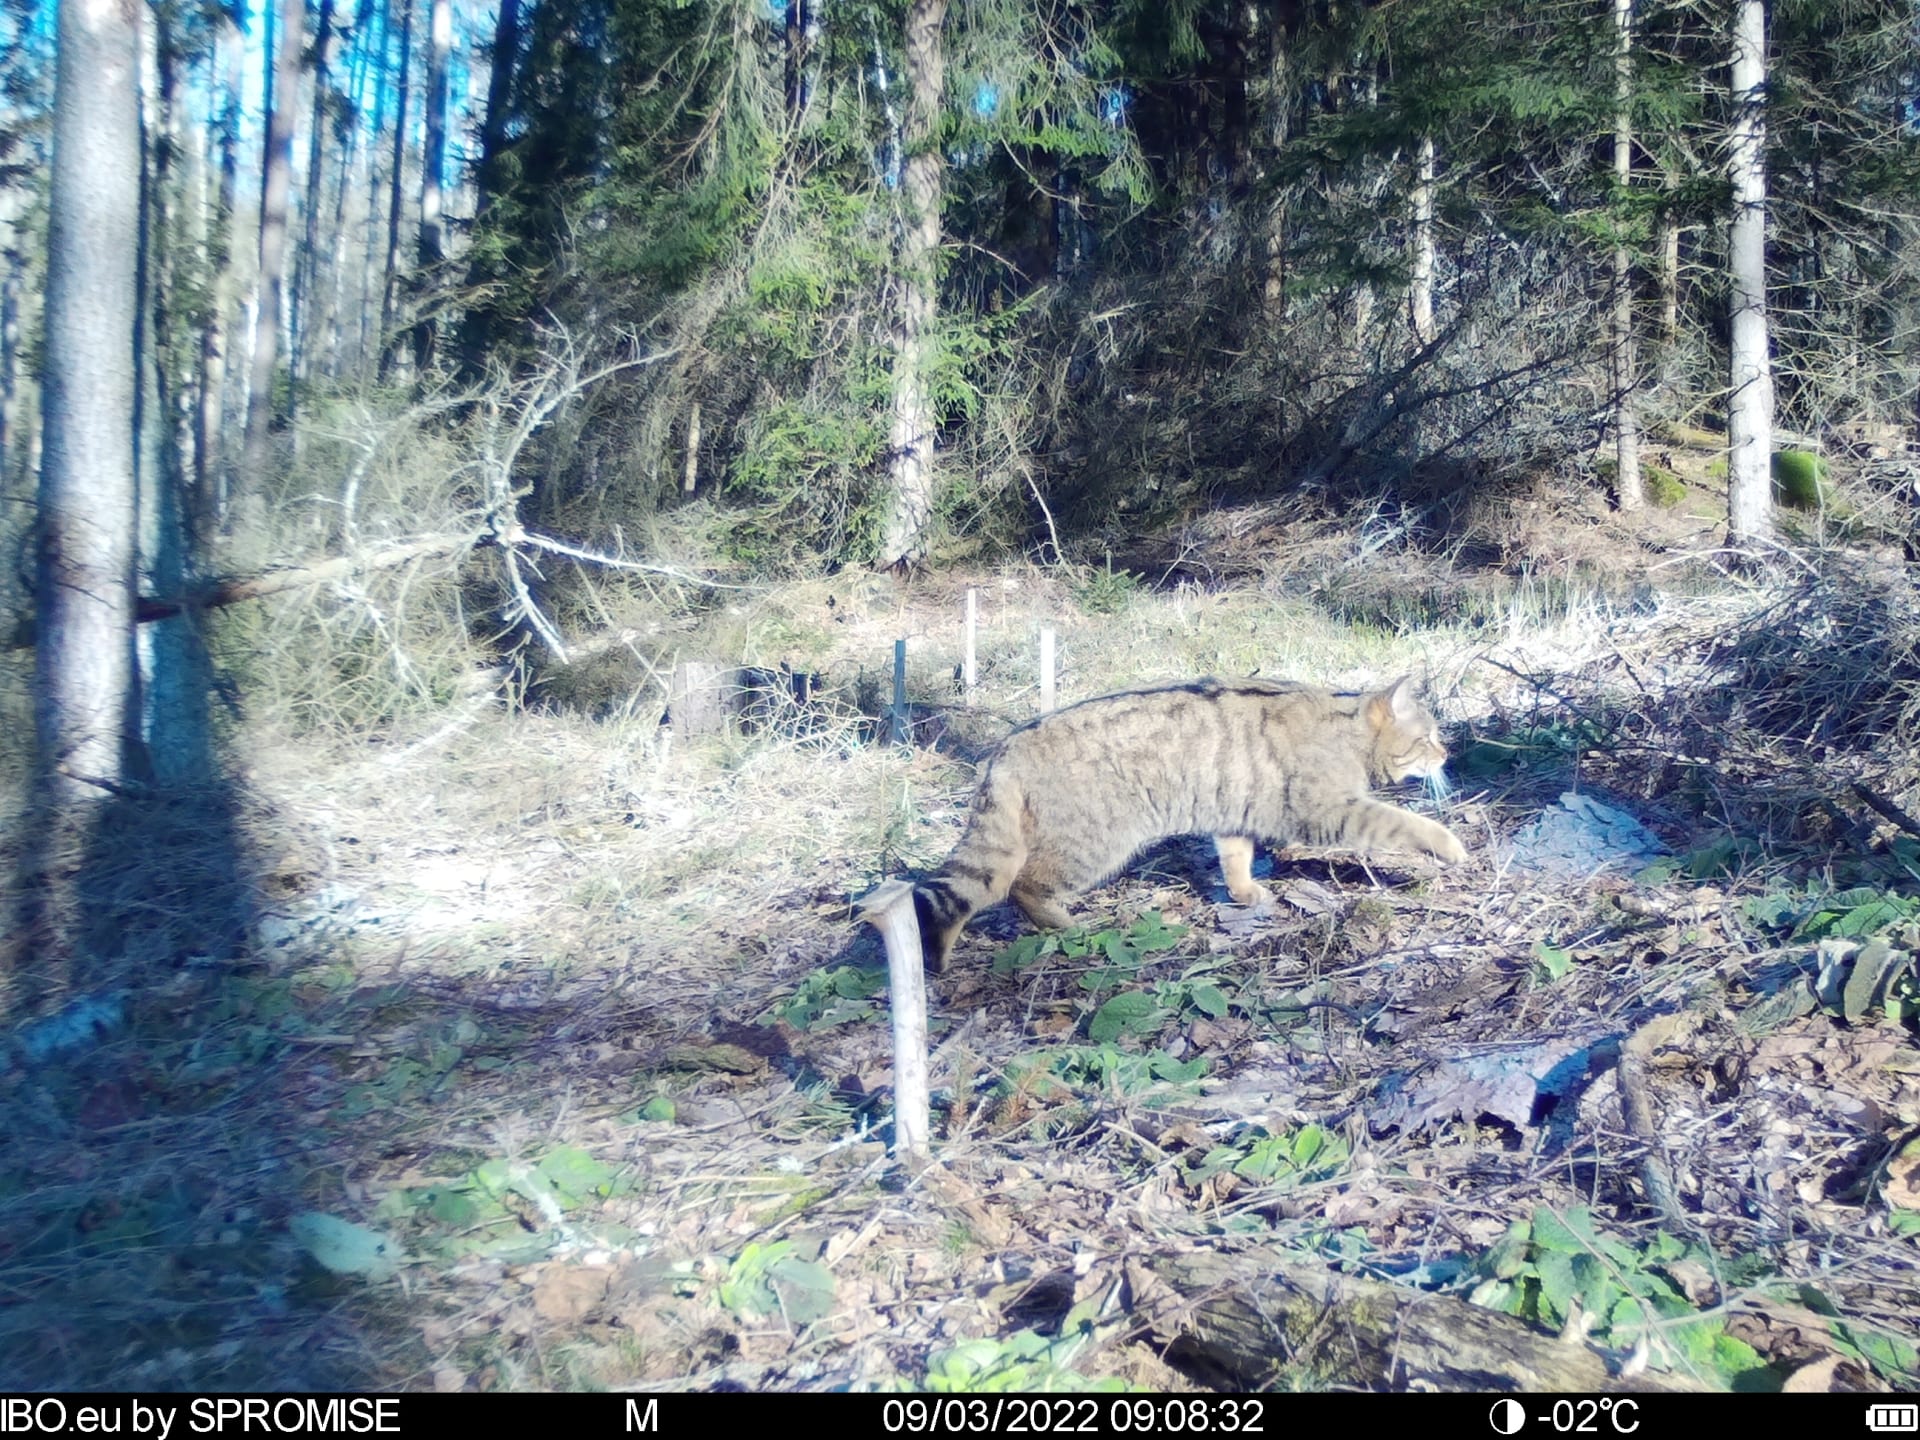 Překvapivé svědectví vydaly snímky z fotopastí, které jsou na území národního parku České Švýcarsko rozmístěny za účelem monitoringu volně žijících zvířat.